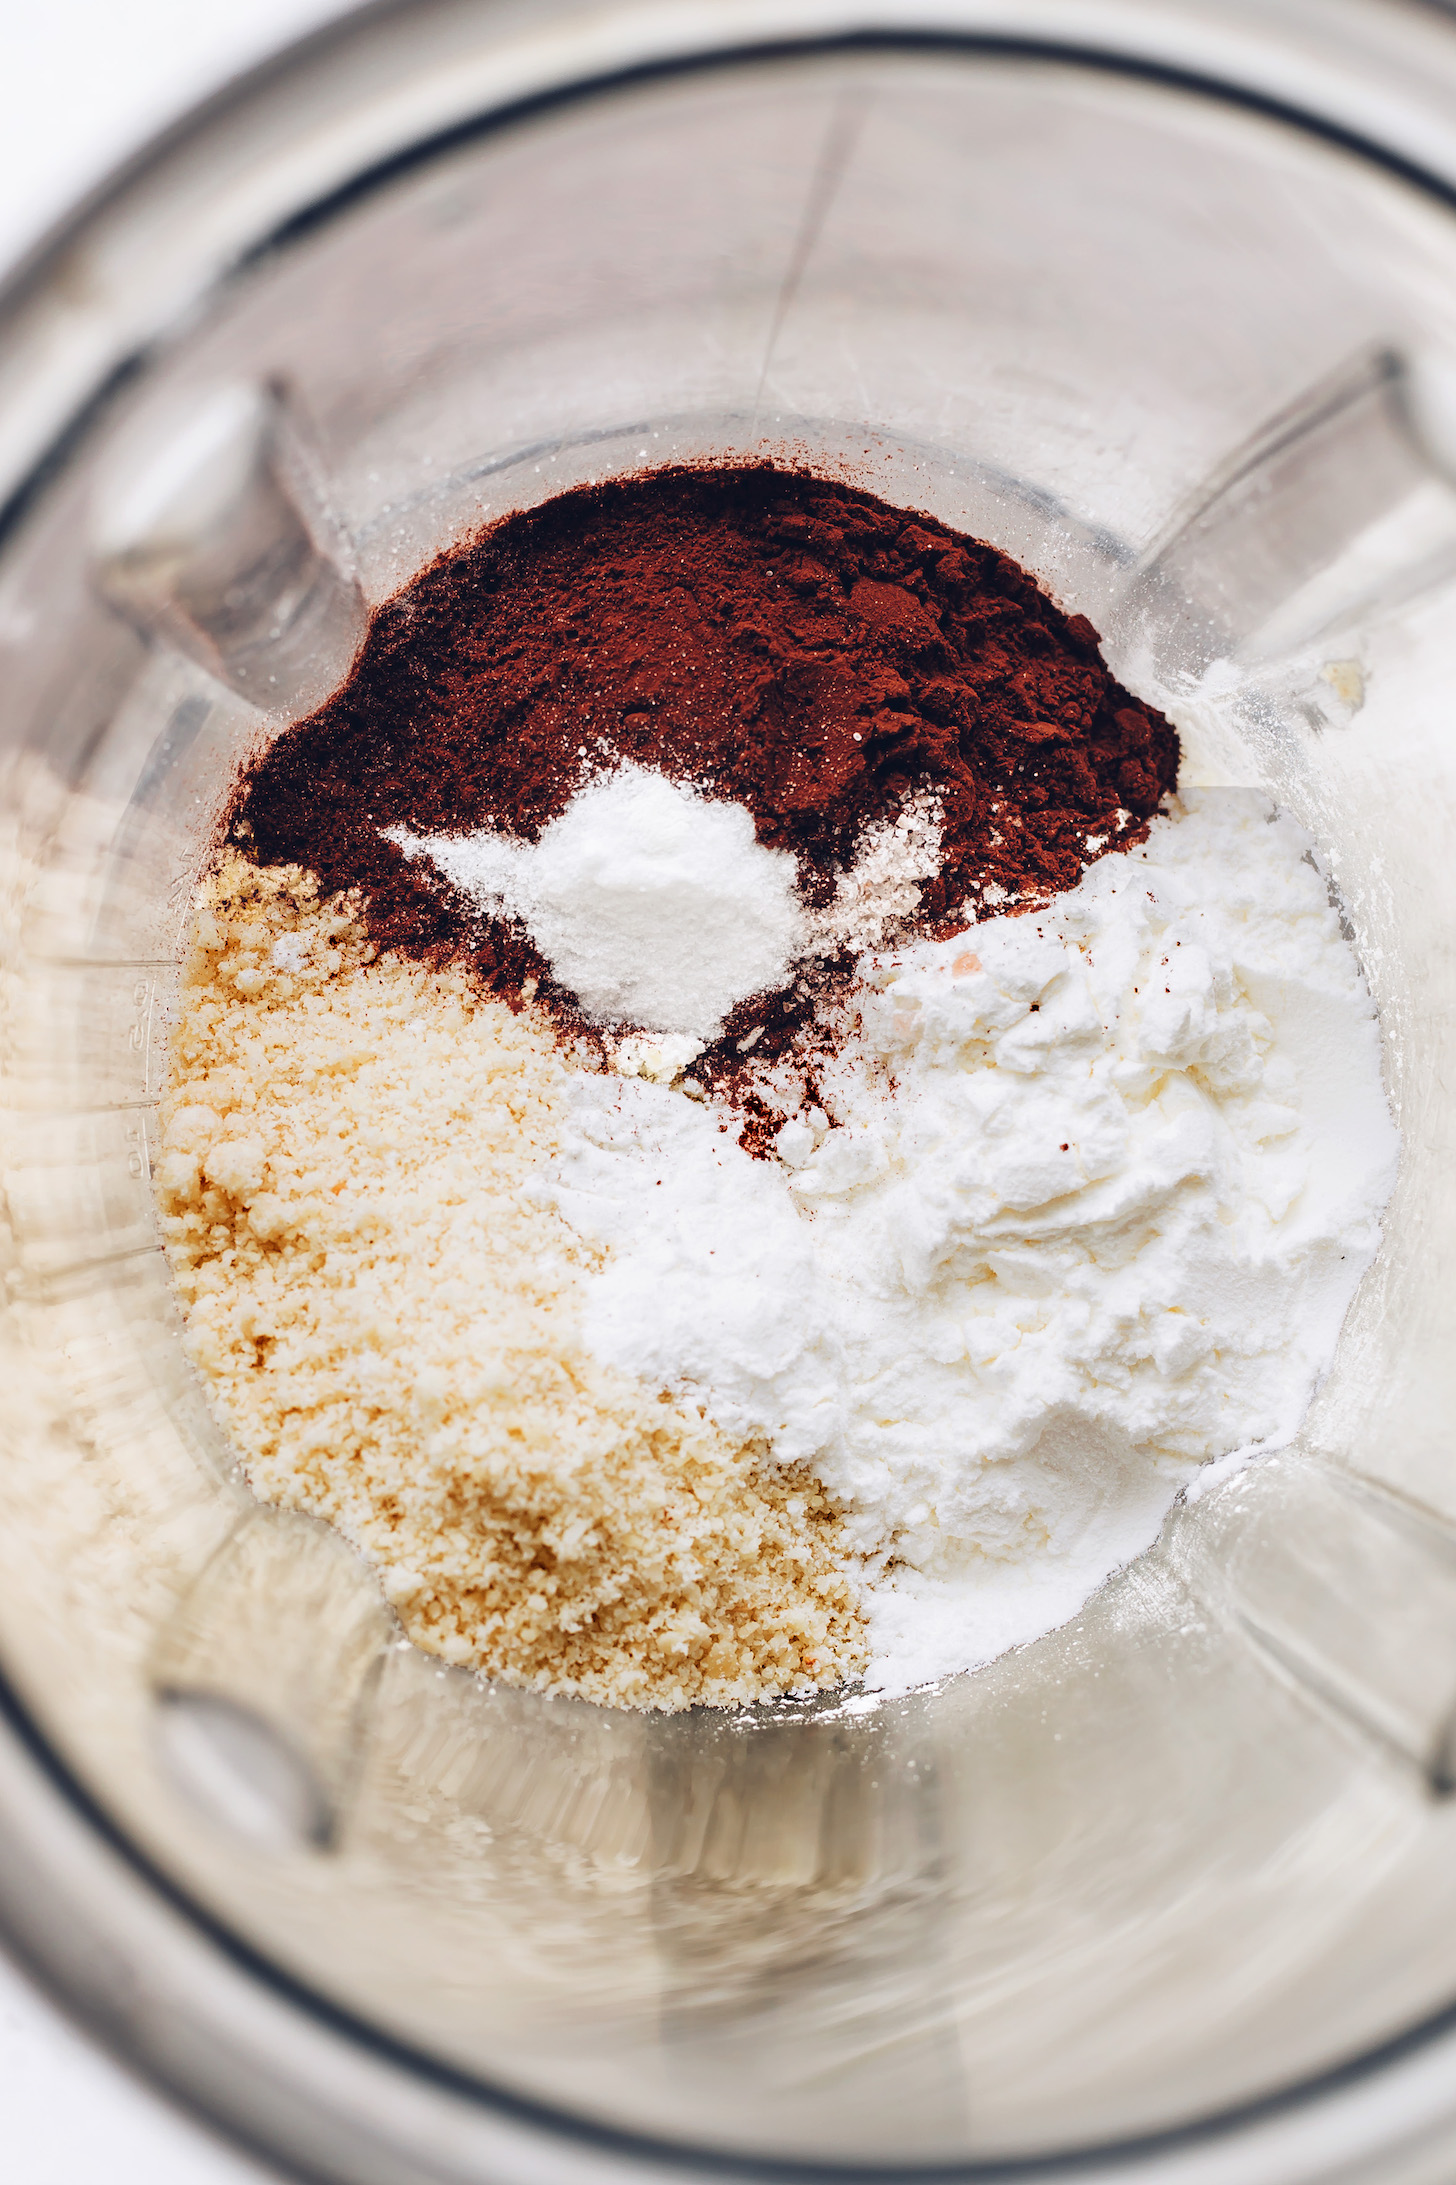 Almond flour, tapioca starch, cocoa powder, baking soda, and sea salt in a food processor